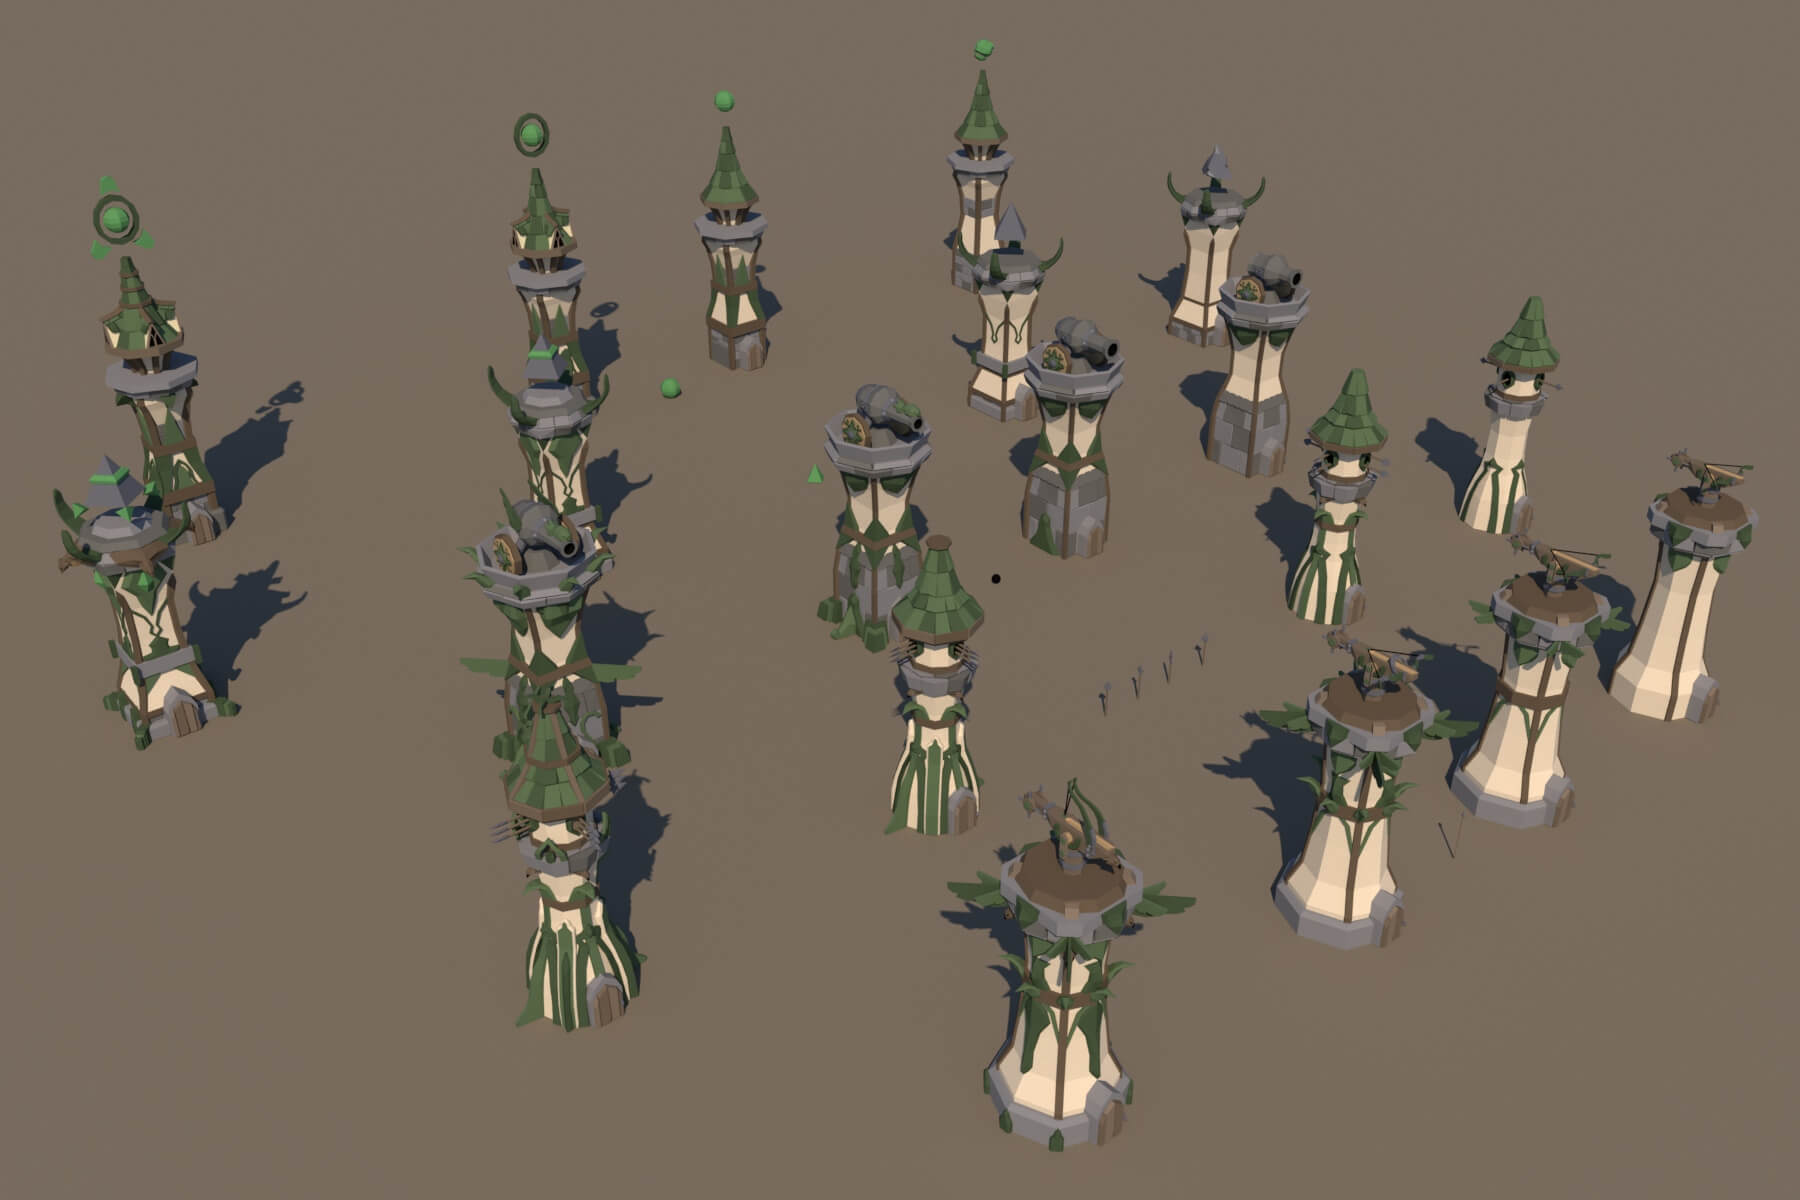 Tower Defense Towers - 3D model by indie-pixel (@indie-pixel) [ce20073]